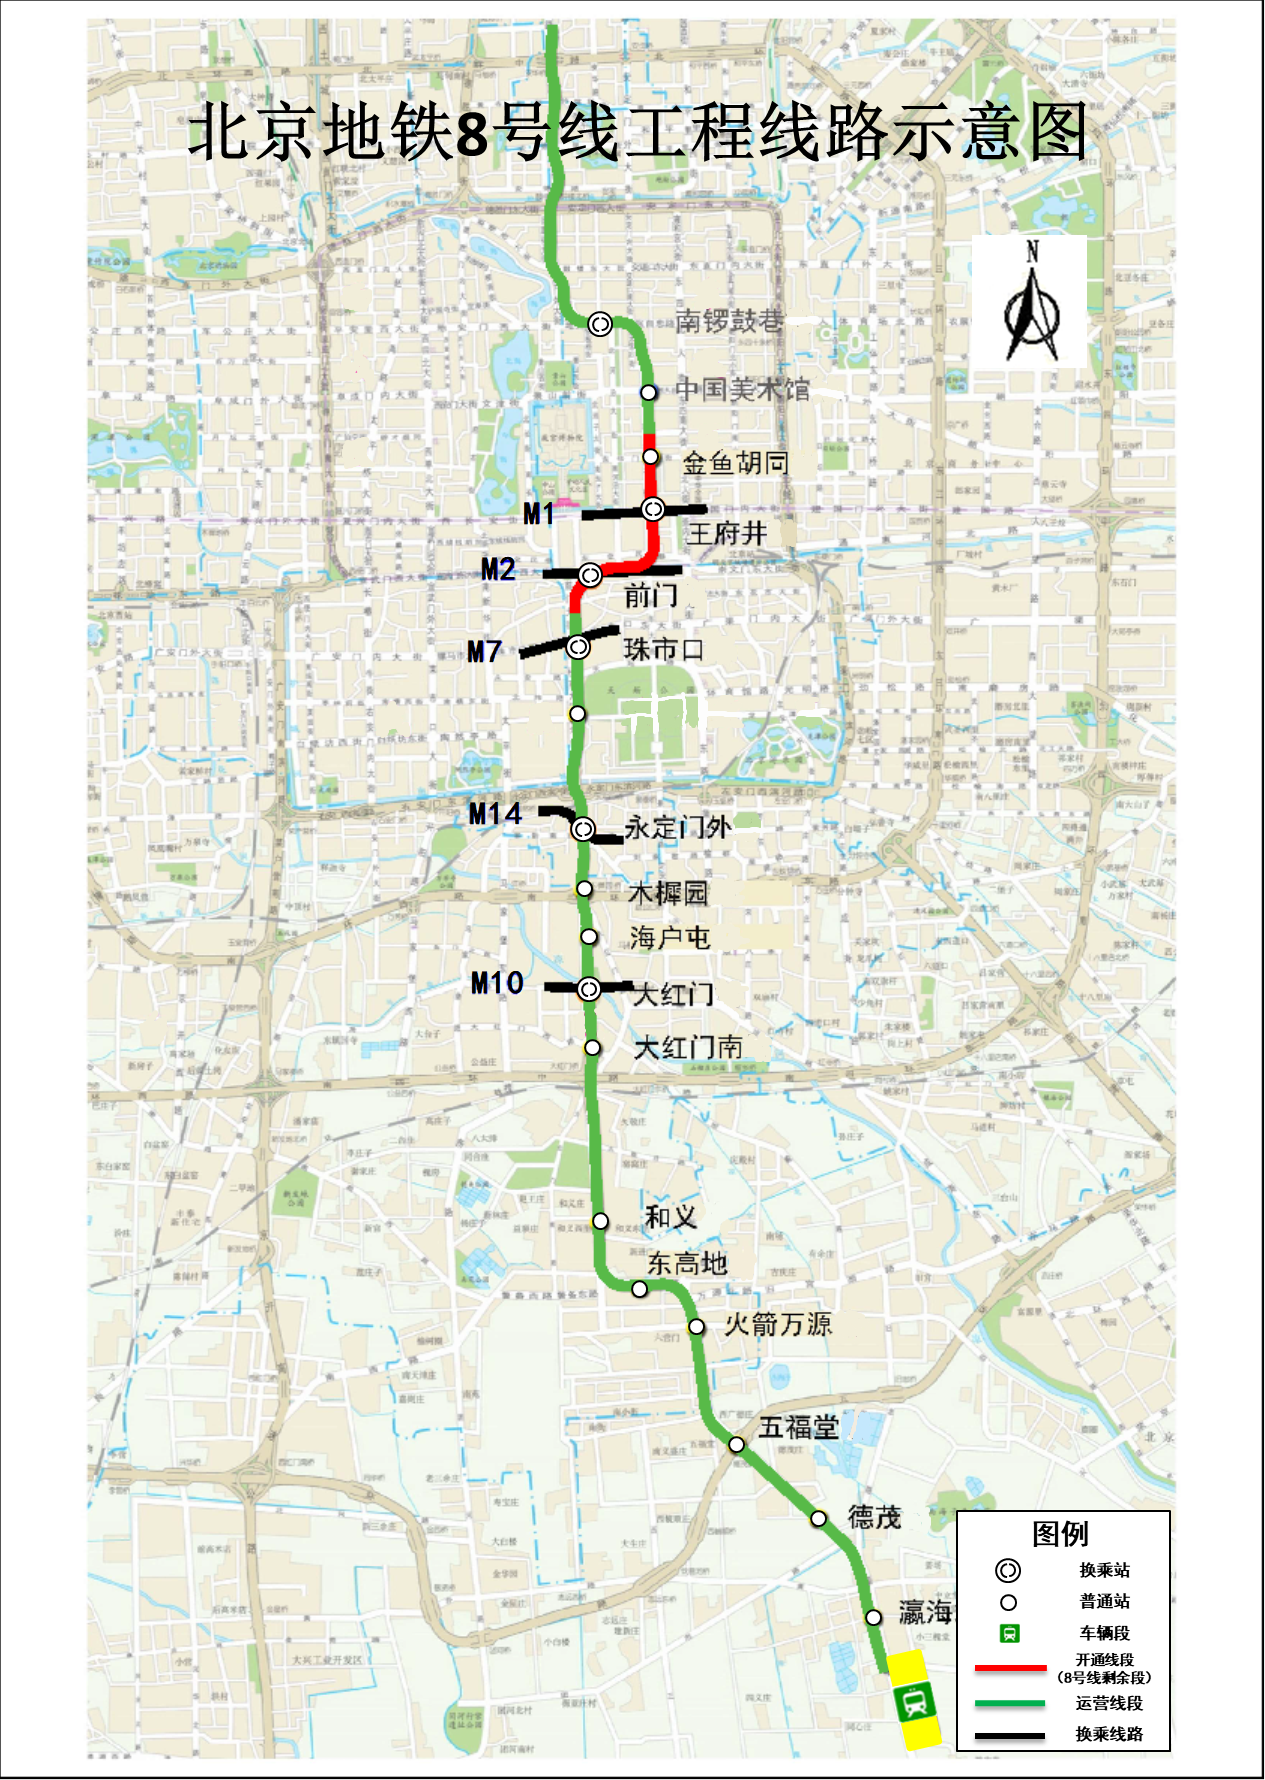 北京地铁8号线工程线路示意图。